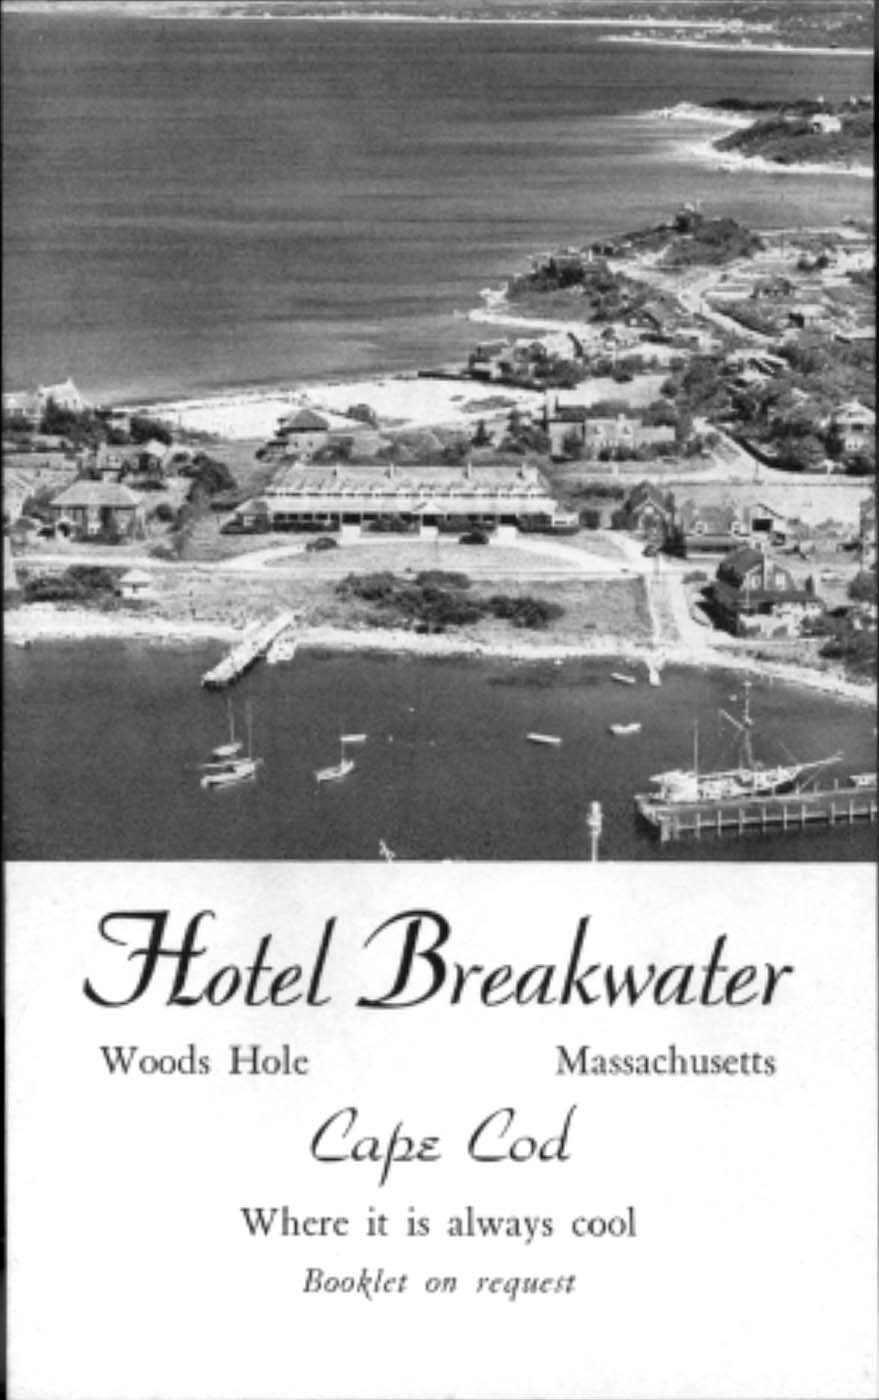 The Breakwater Hotel